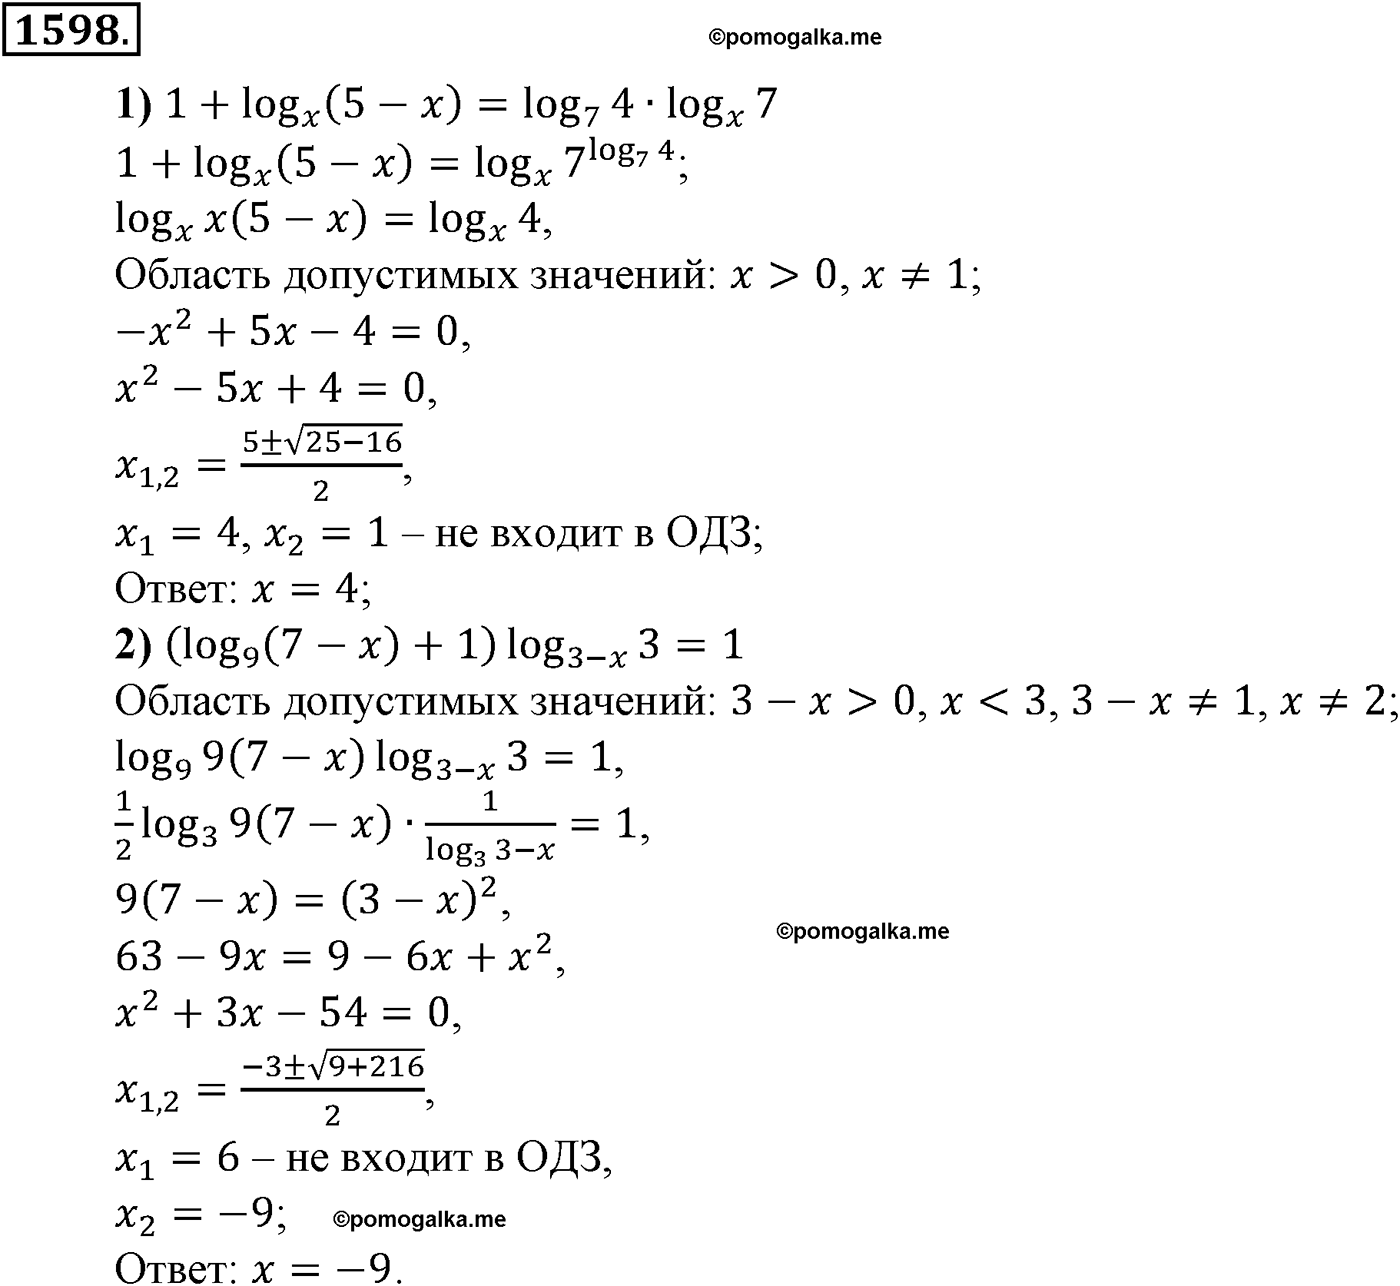 разбор задачи №1598 по алгебре за 10-11 класс из учебника Алимова, Колягина